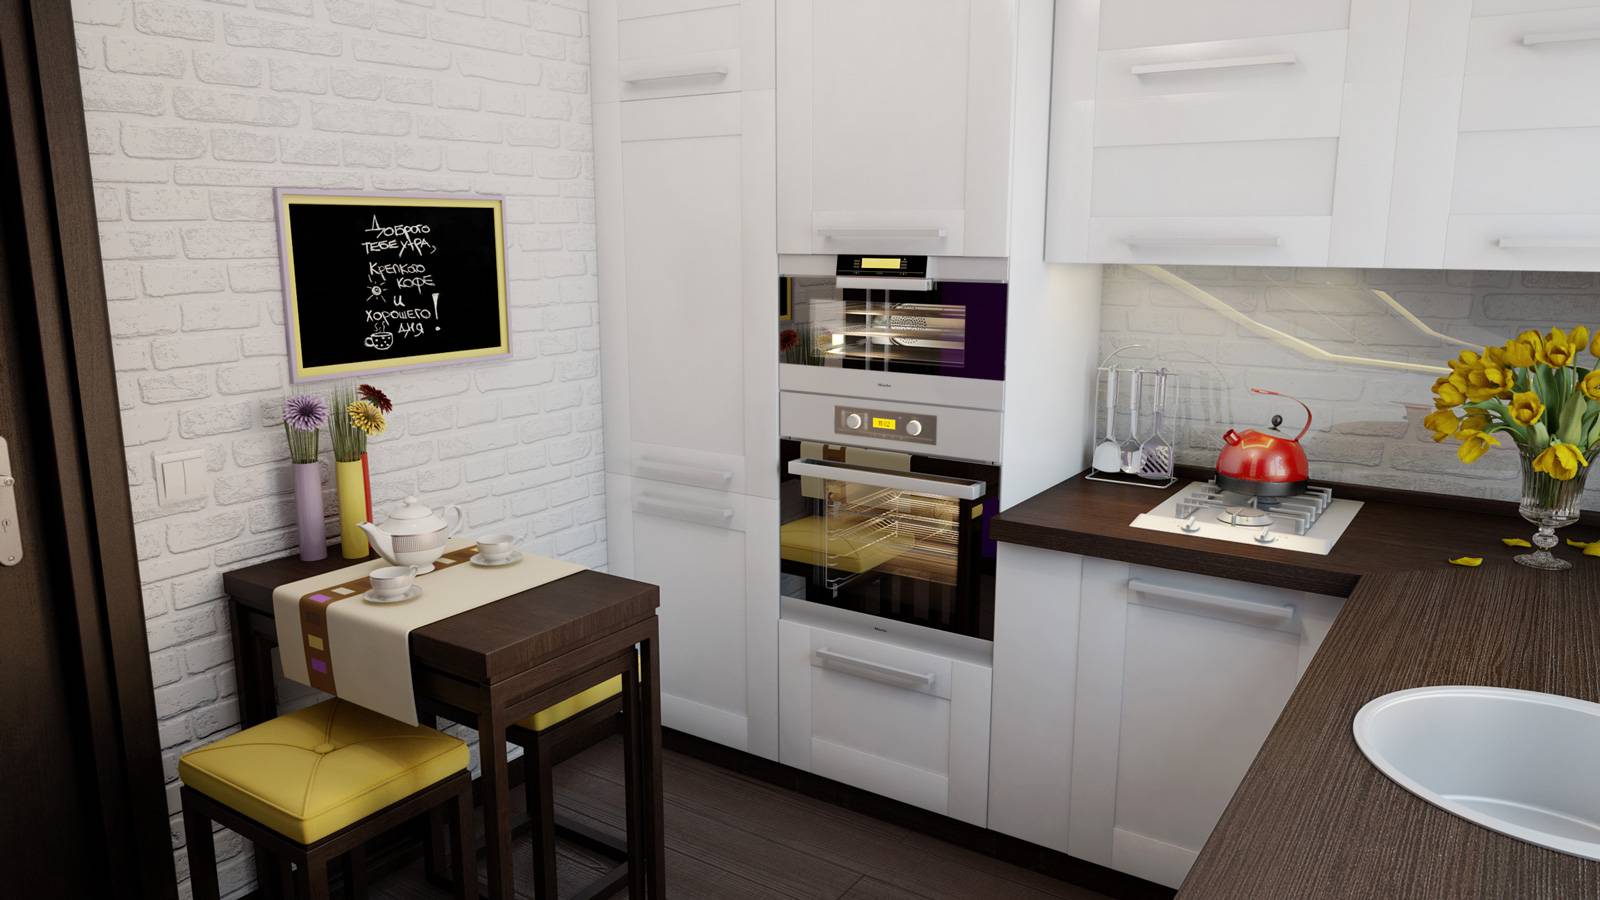 Холодильник на кухне: дизайн, расположение на кухне, как спрятать, поставить и вписать холодильник